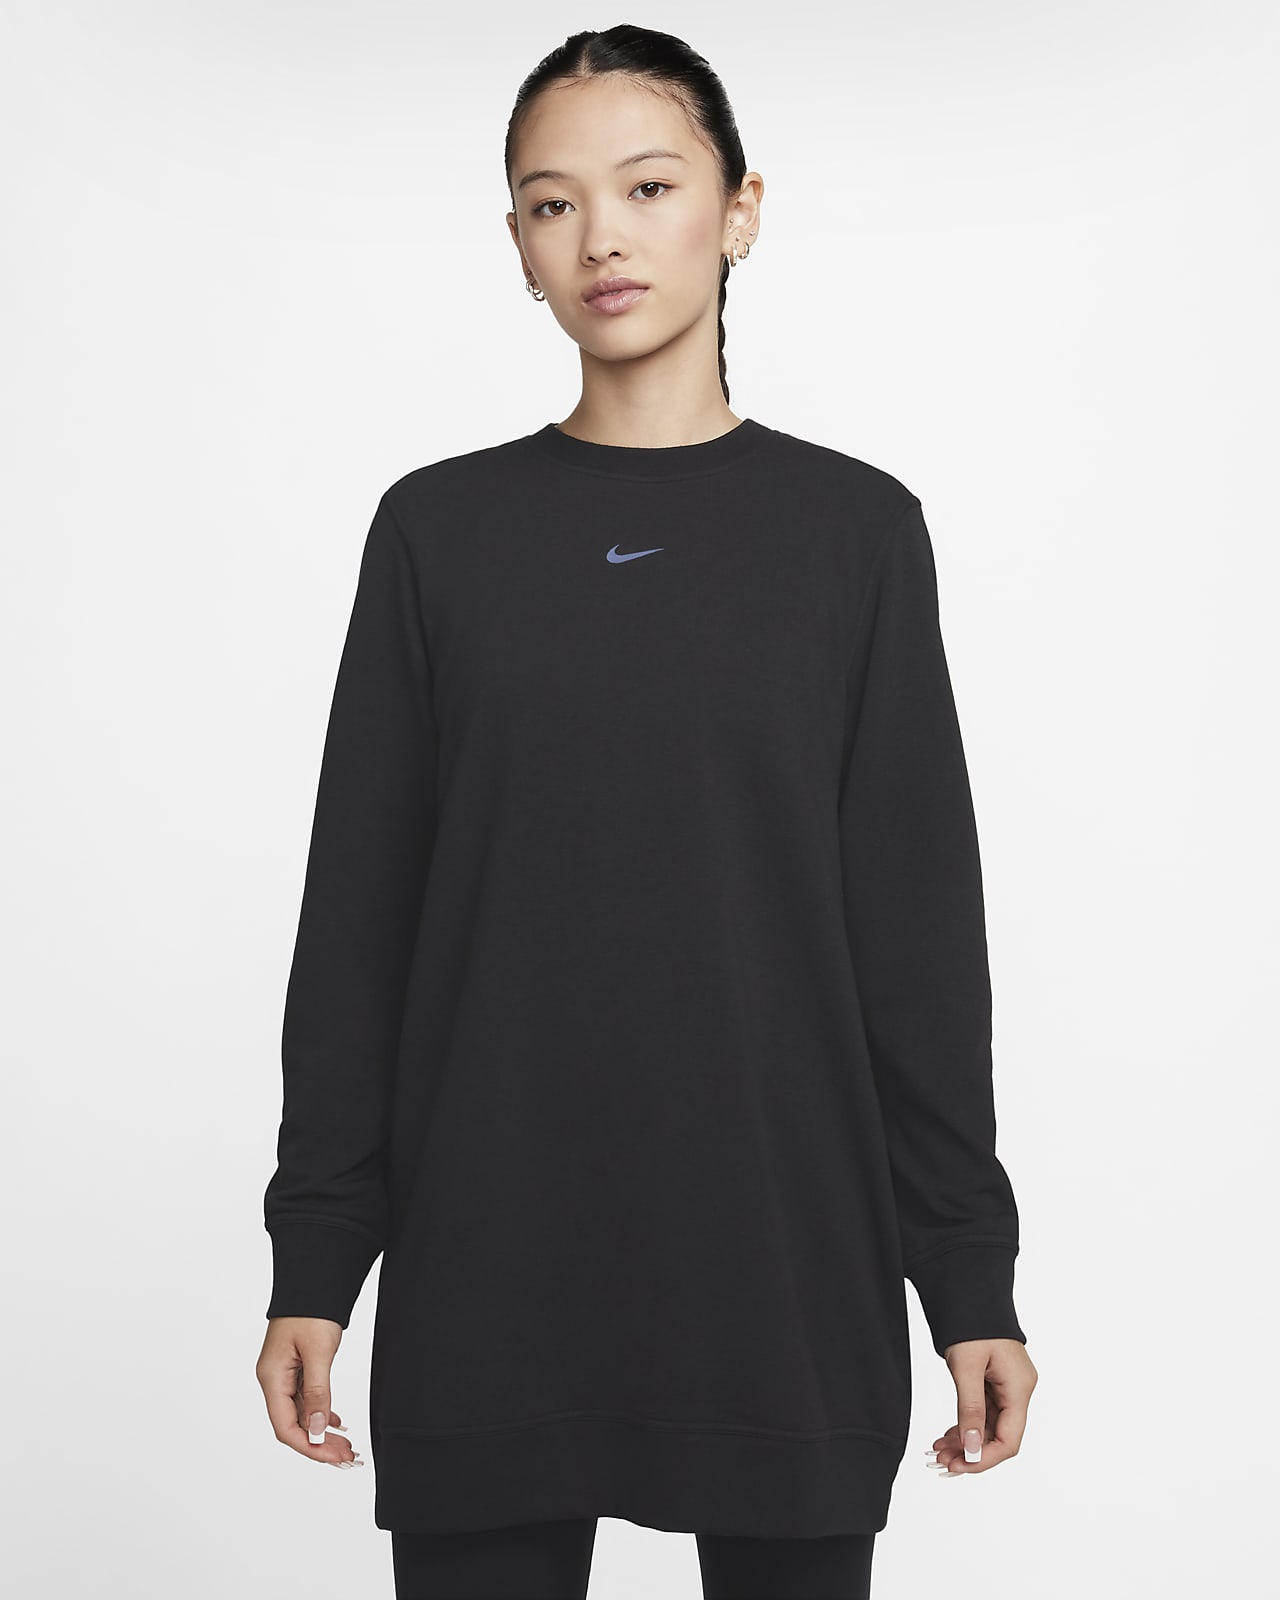 เสื้อทูนิคคอกลมเฟรนช์เทรีผู้หญิง Nike Dri-FIT One